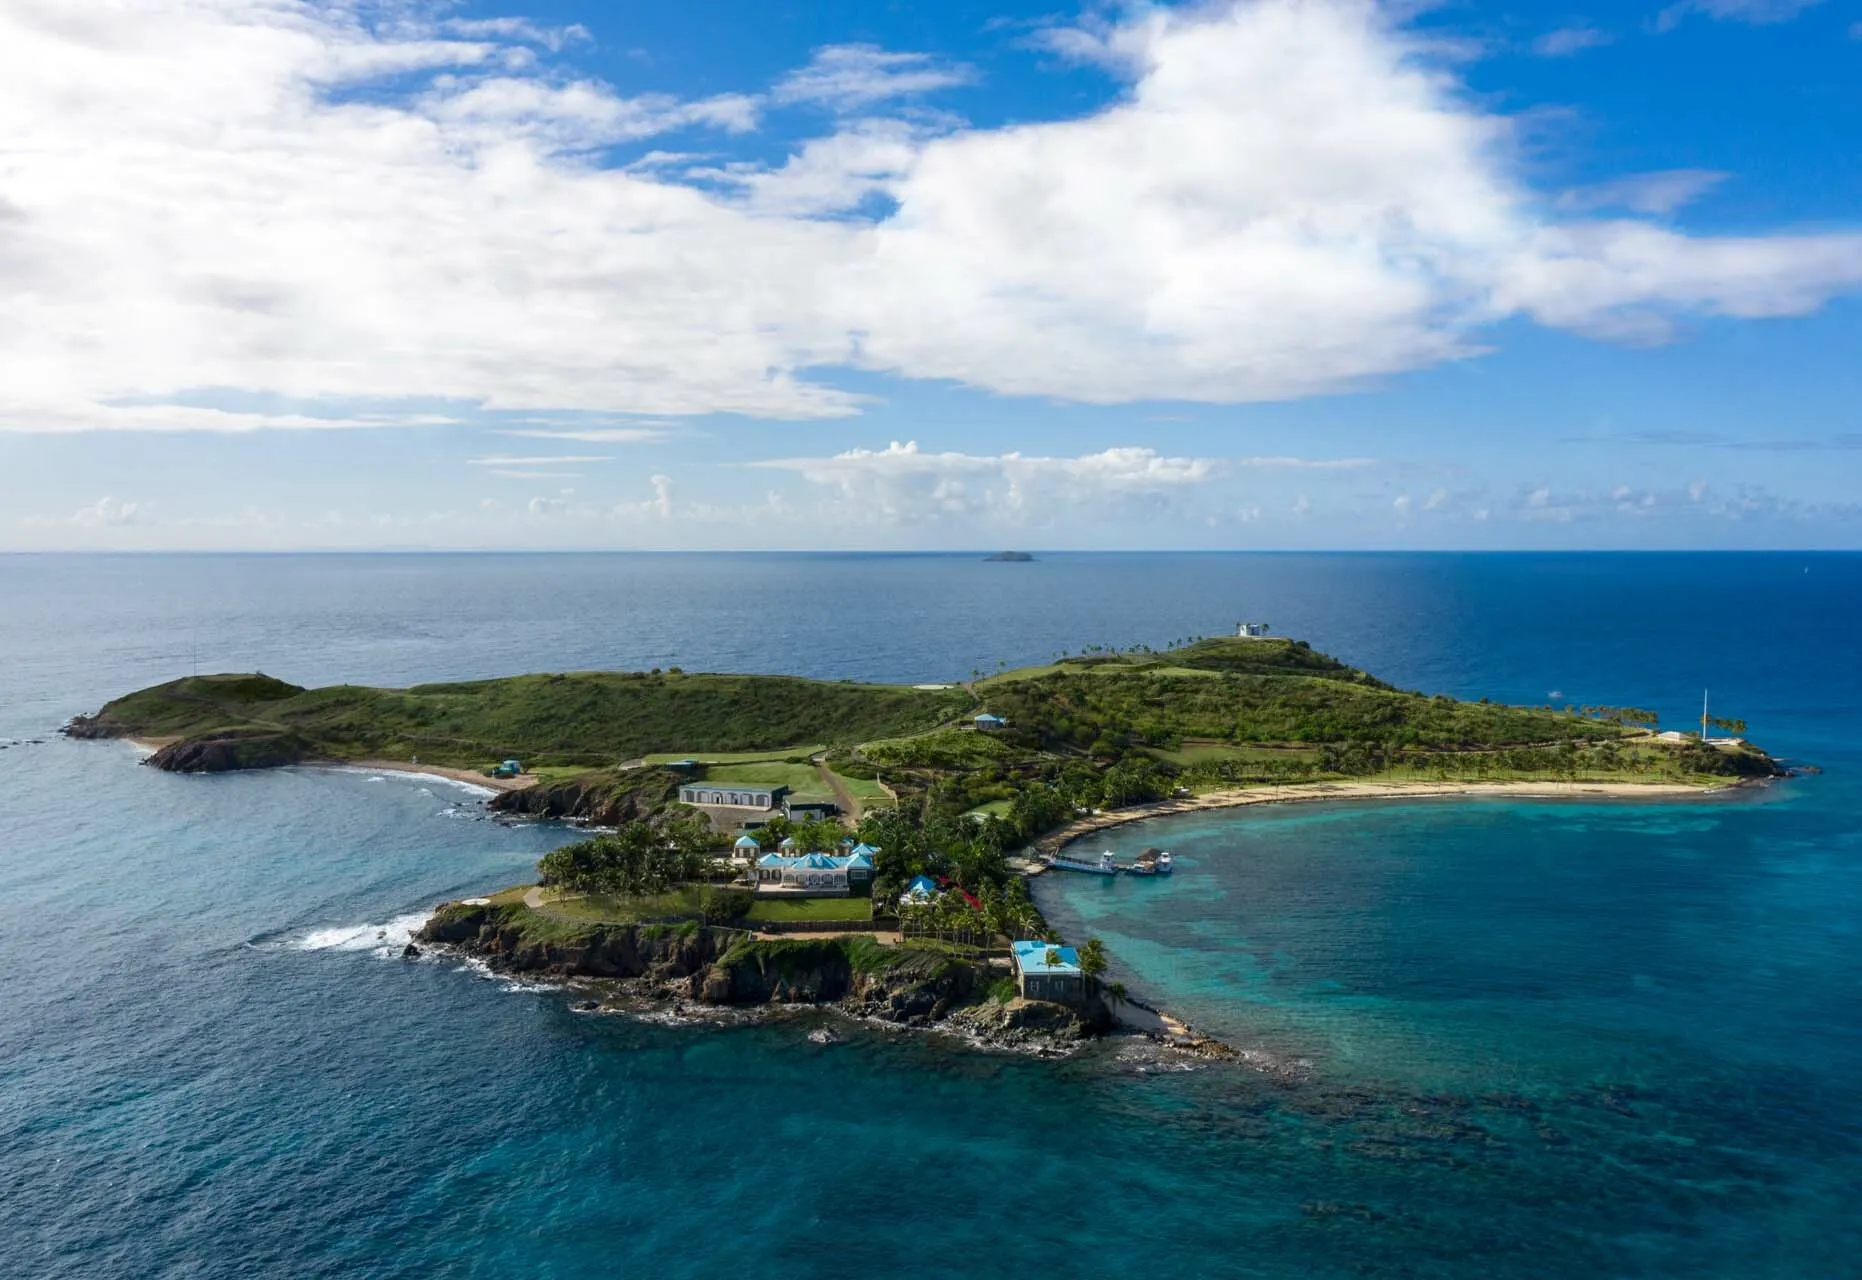 Why Did Billionaire Stephen Deckoff Purchase Jeffrey Epstein’s Island?